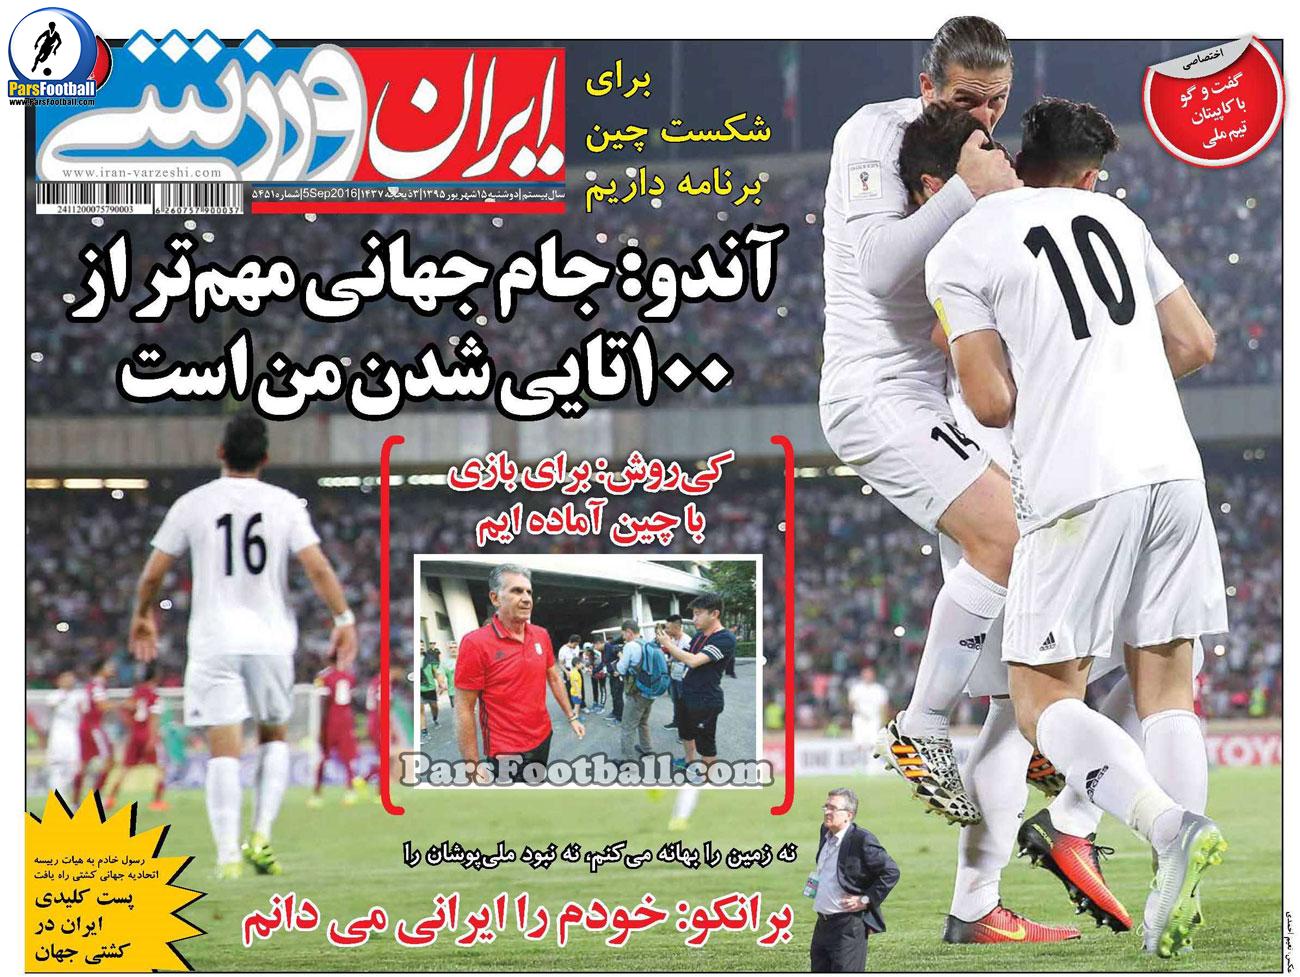 روزنامه ایران ورزشی دوشنبه 15 شهریور 95